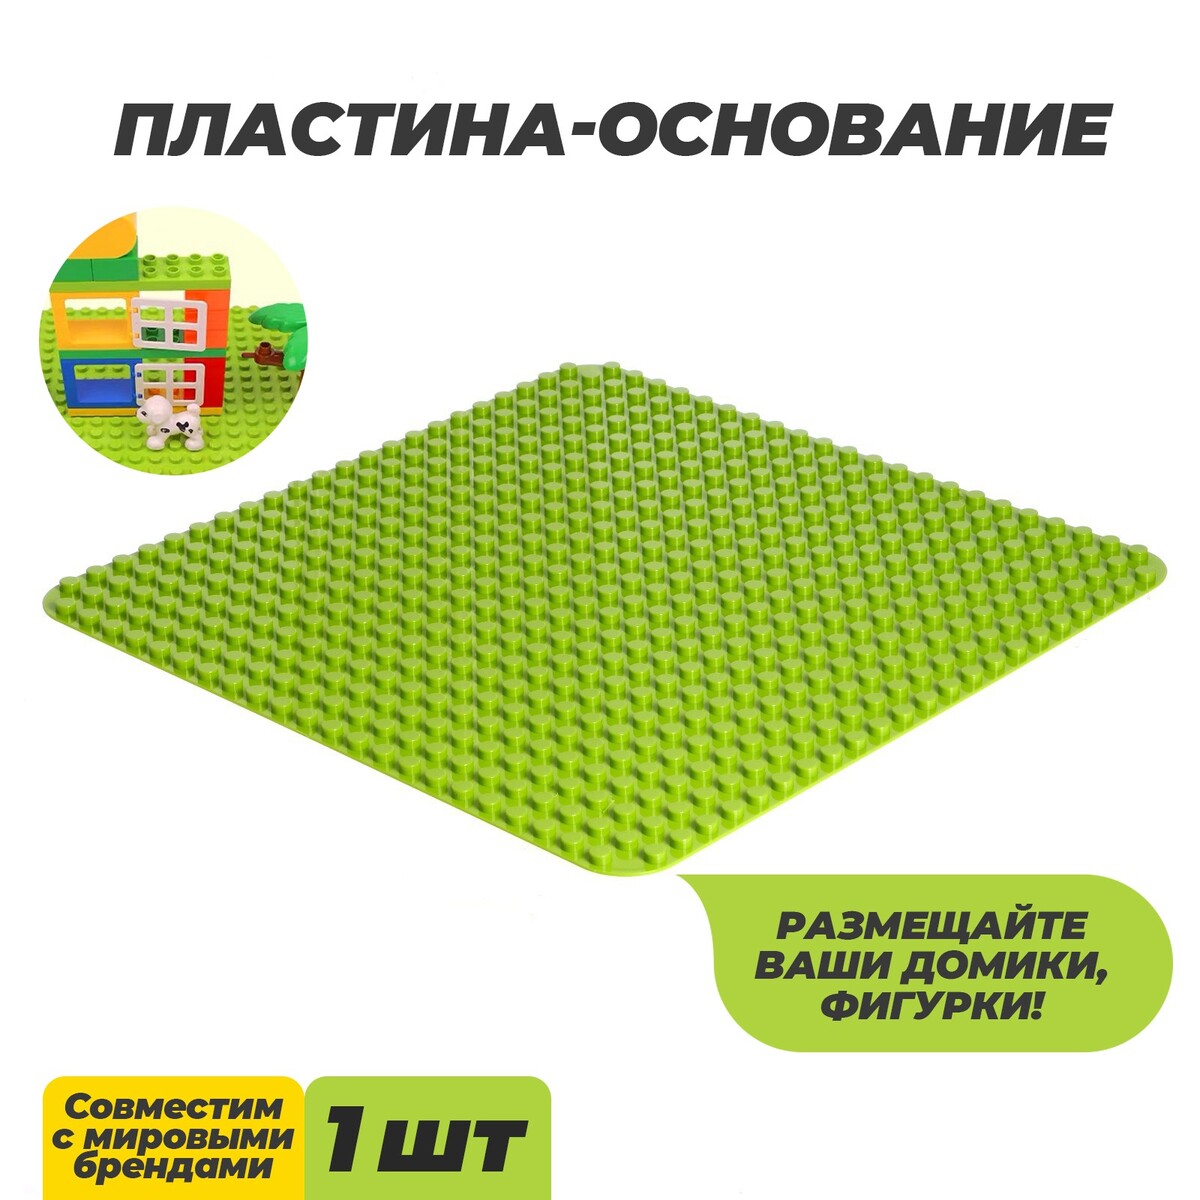 Пластина-основание для конструктора, 38,4 × 38,4 см, цвет салатовый пластина основание для конструктора 25 5 × 12 5 см серый